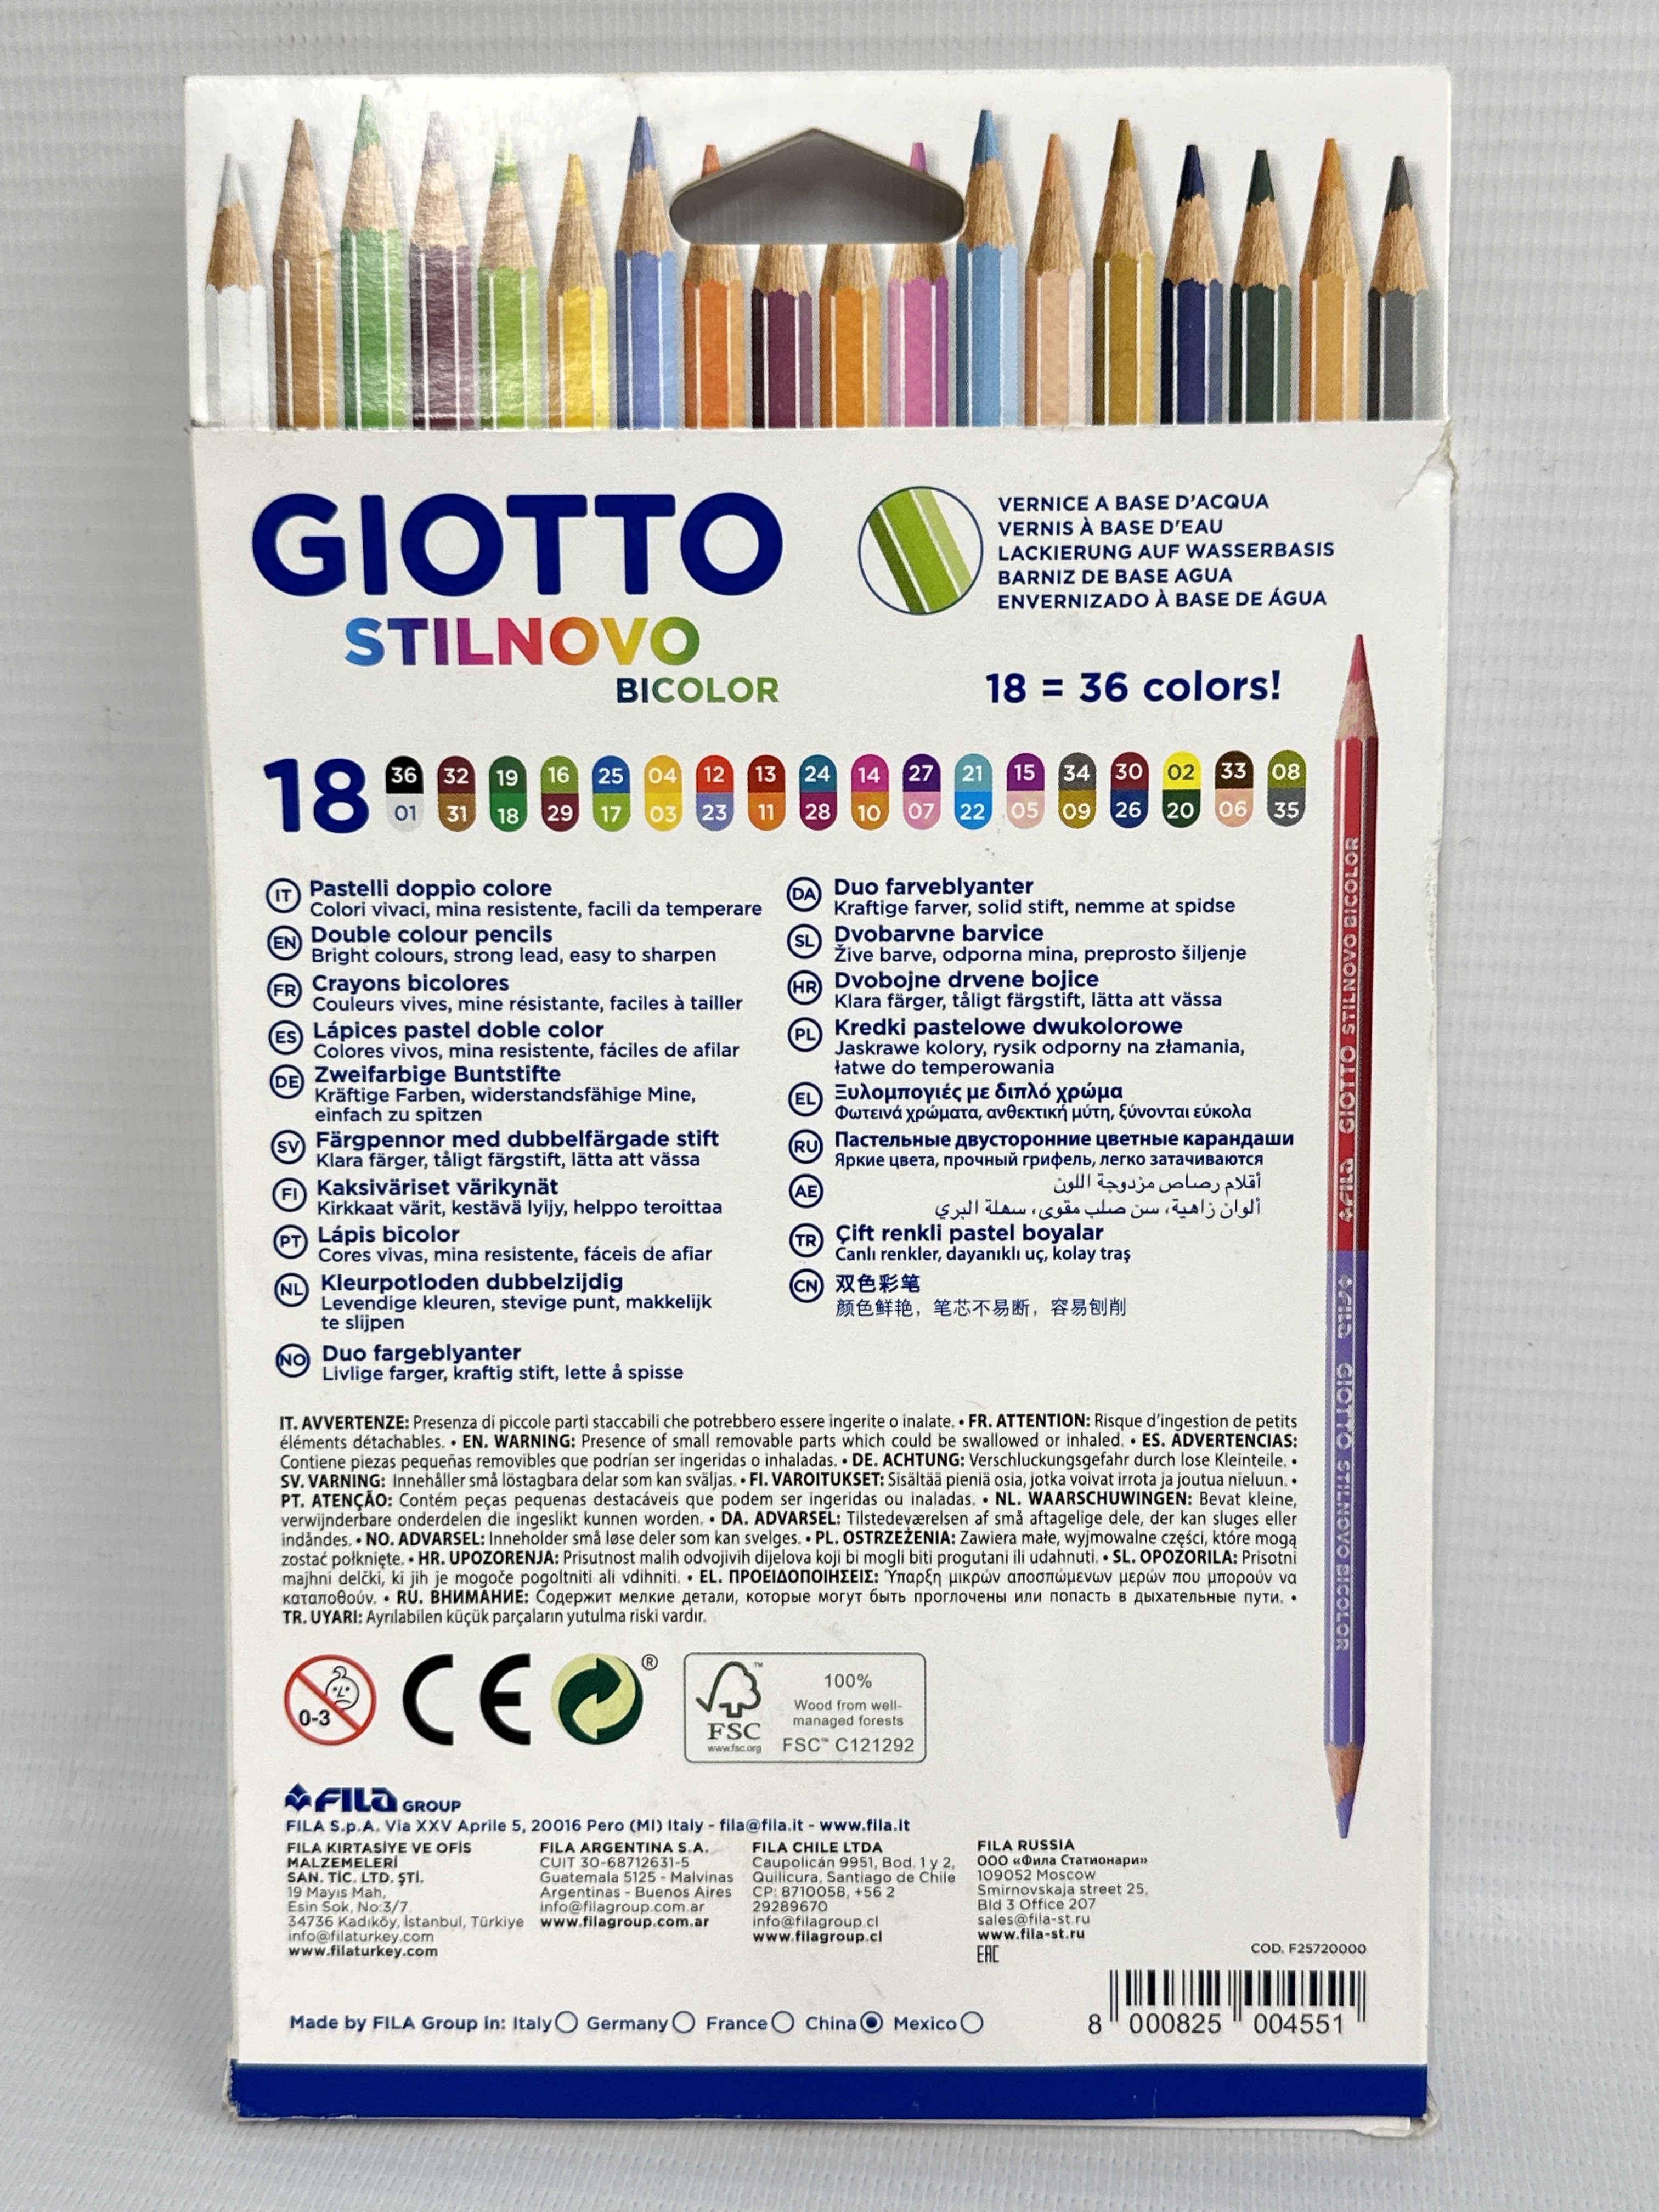 GIOTTO Stilnovo Bicolor, Double Colour Pencils, 18 Assorted